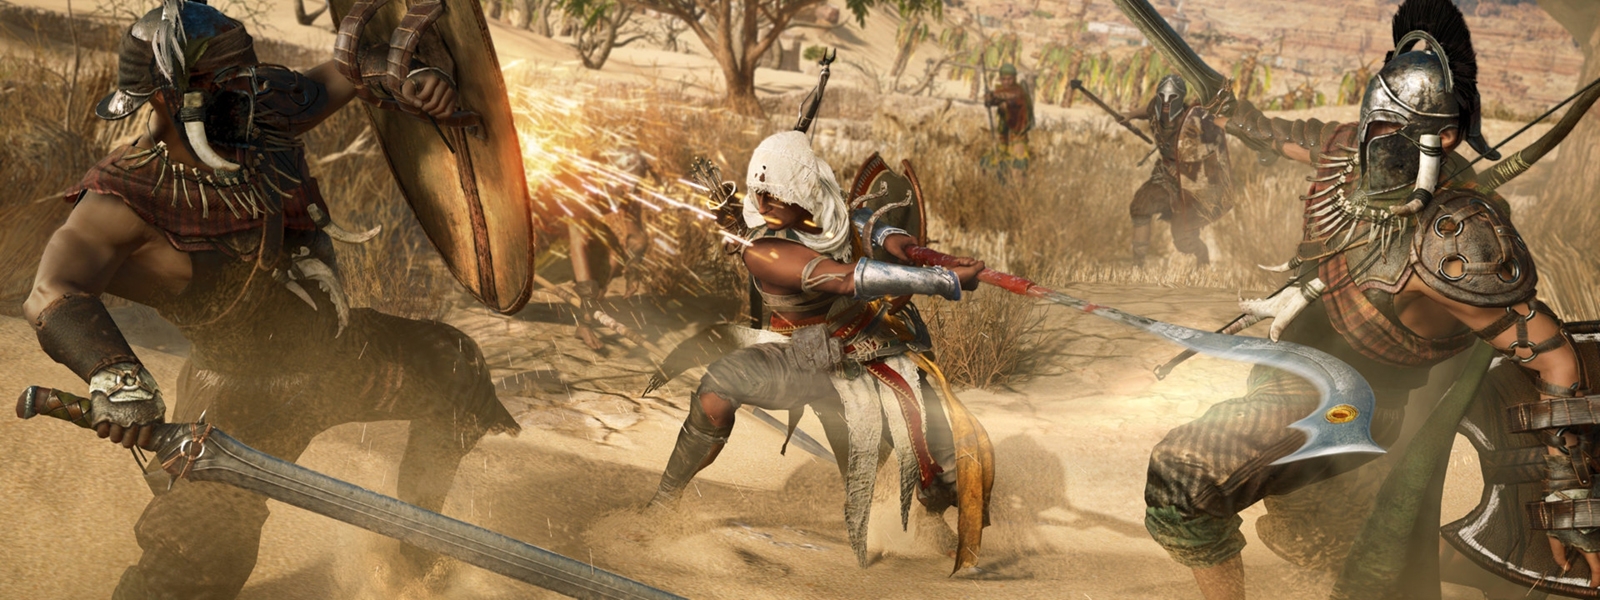 Assassins Creed Origins: лучшие навыки и прокачка персонажа